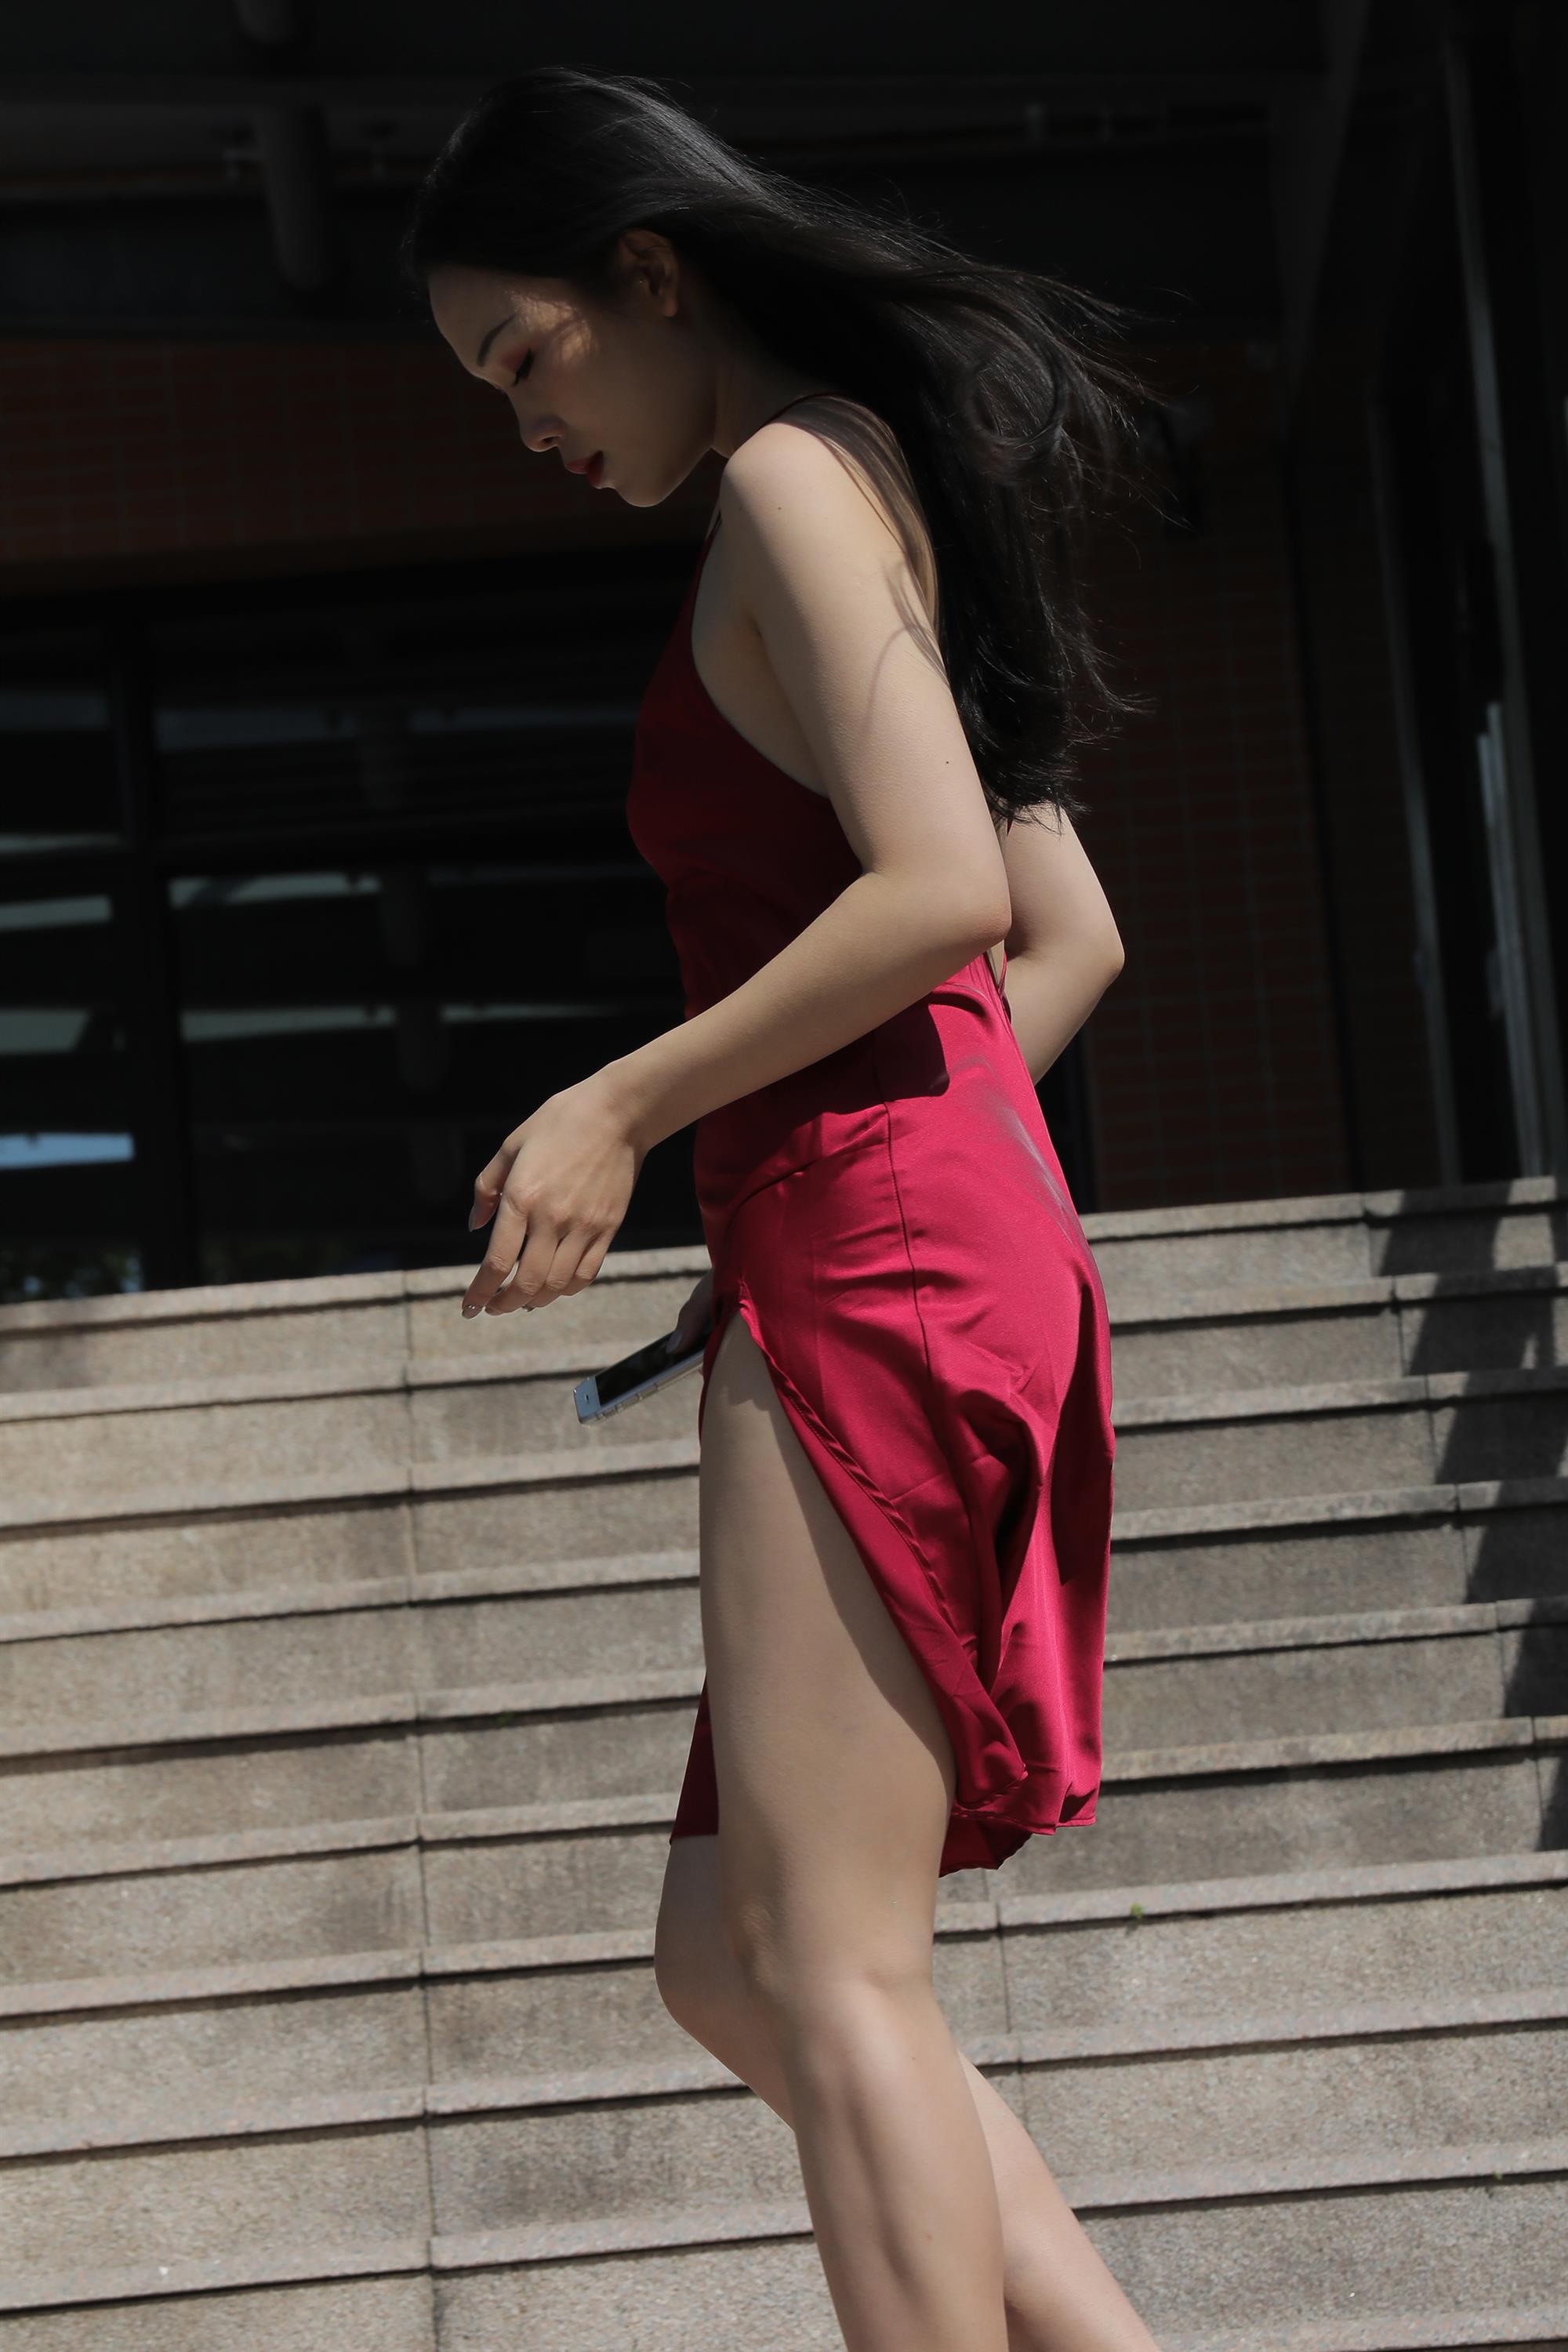 Street beauty in a red dress - 10.jpg